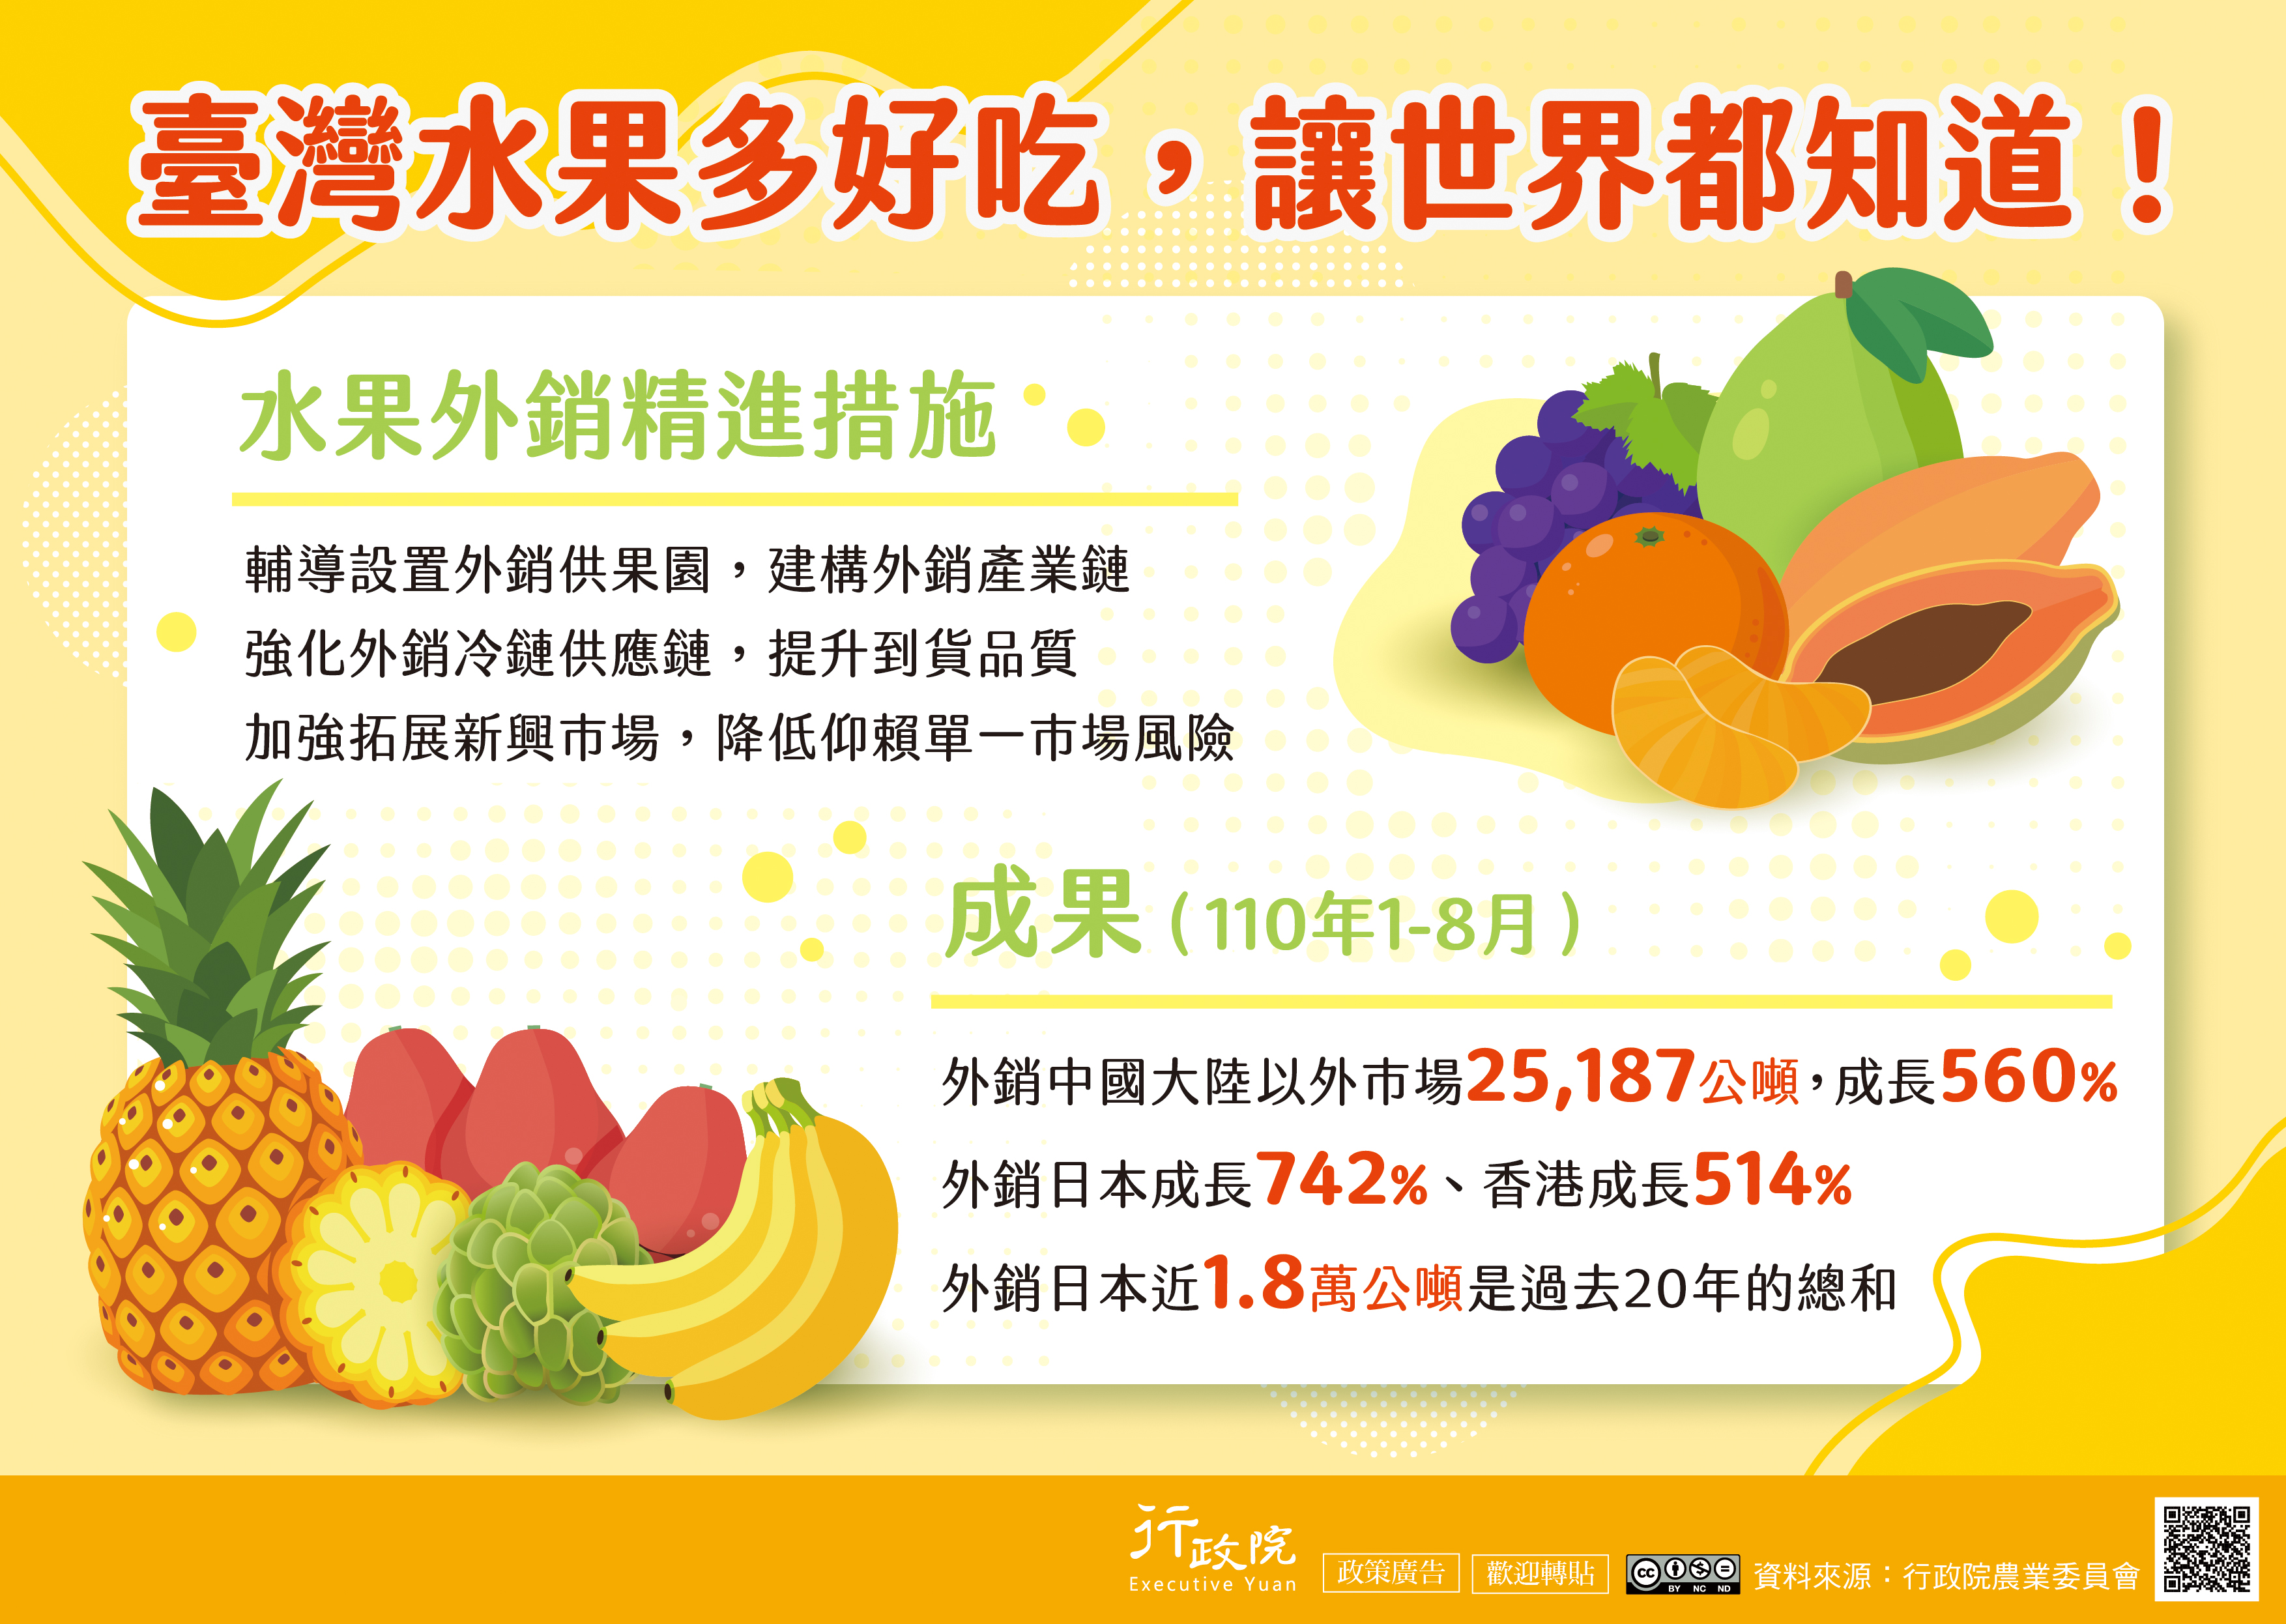 臺灣水果外銷精進措施政策說明